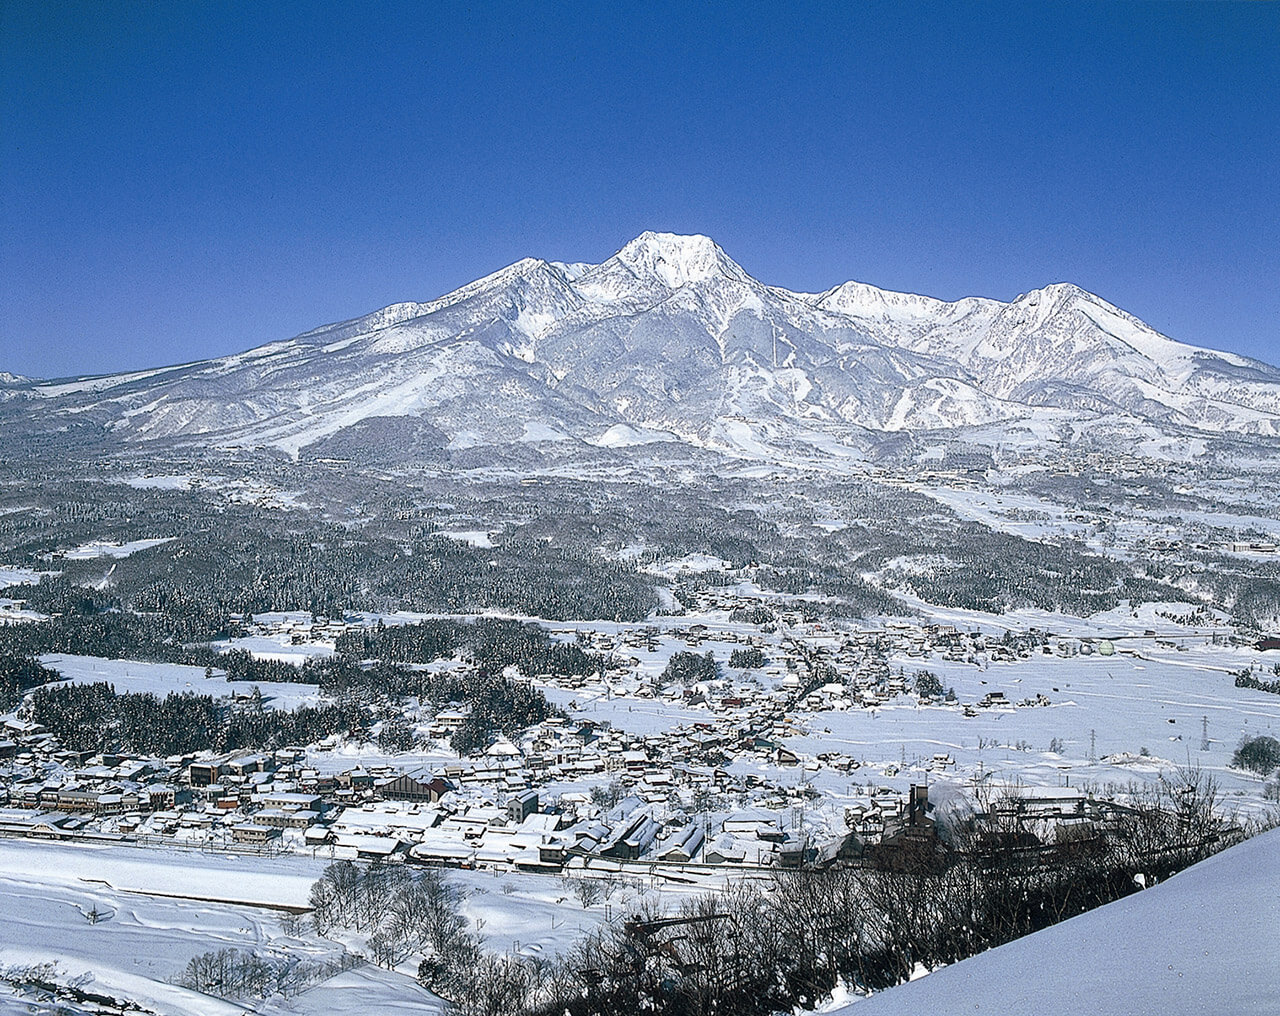 Popular ski resorts in Myoko